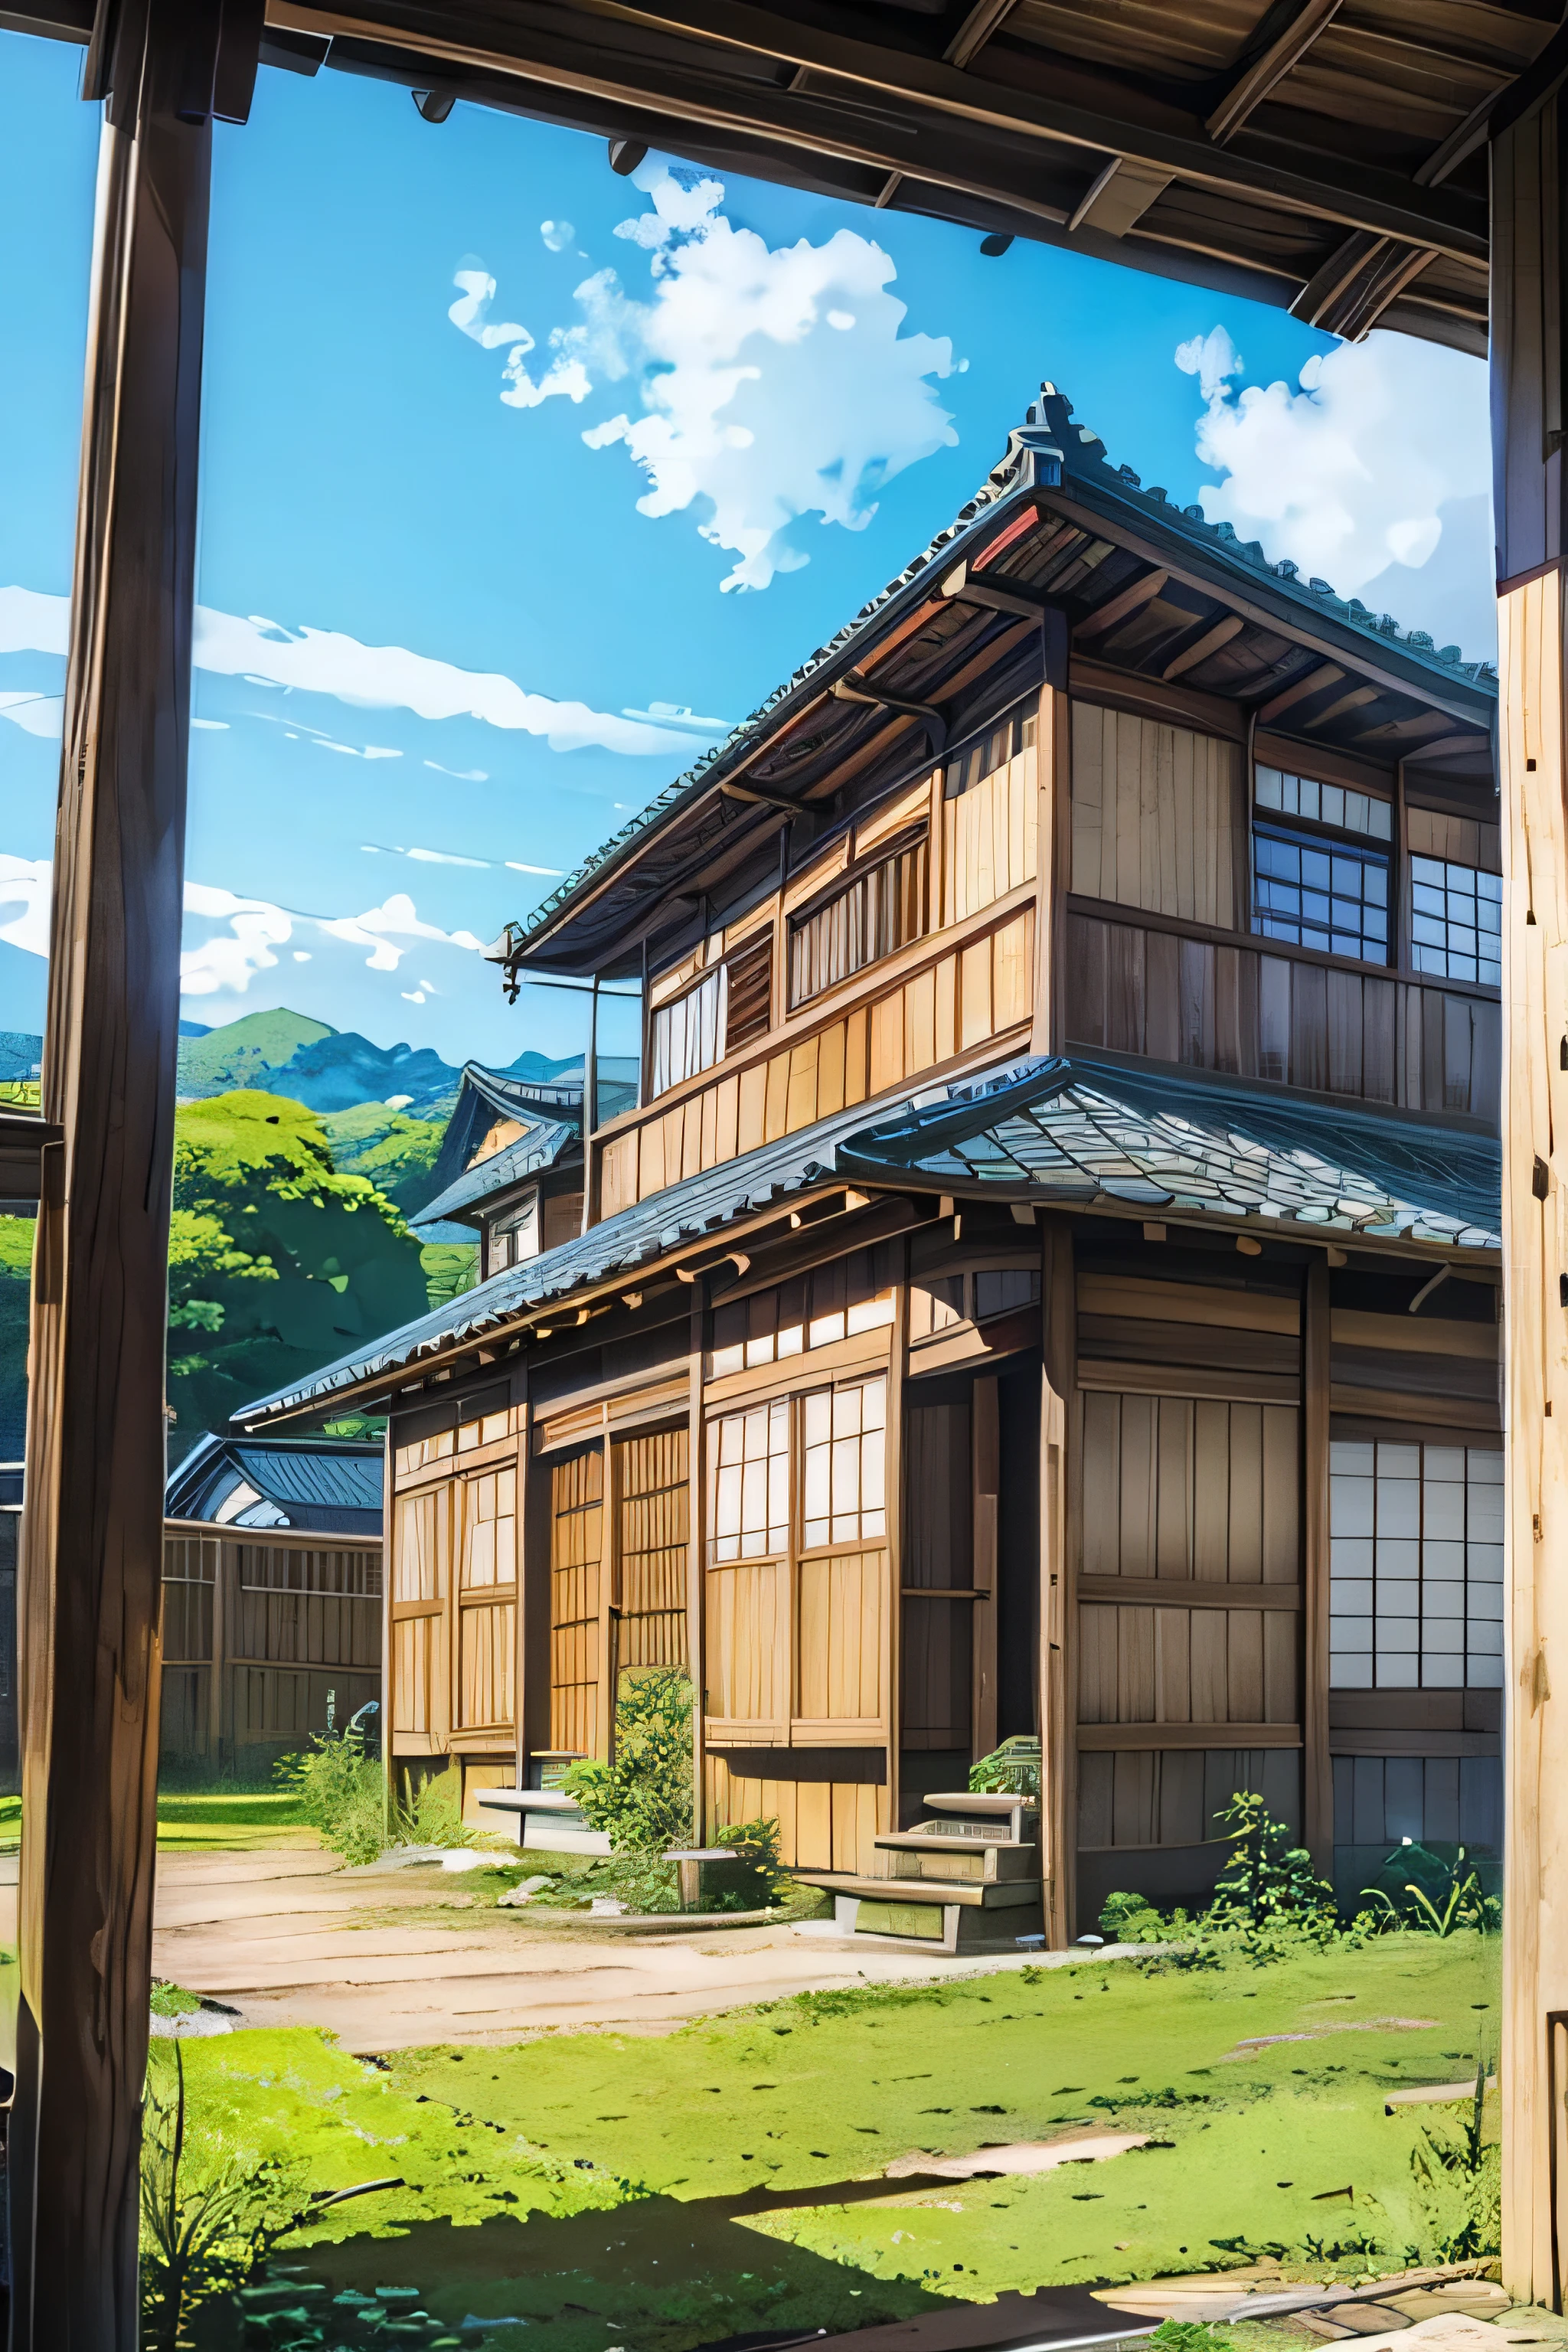 低い角度、広角レンズ、古い日本の家、traditional wooden house in the 国side、国、広い青空、アニメの背景